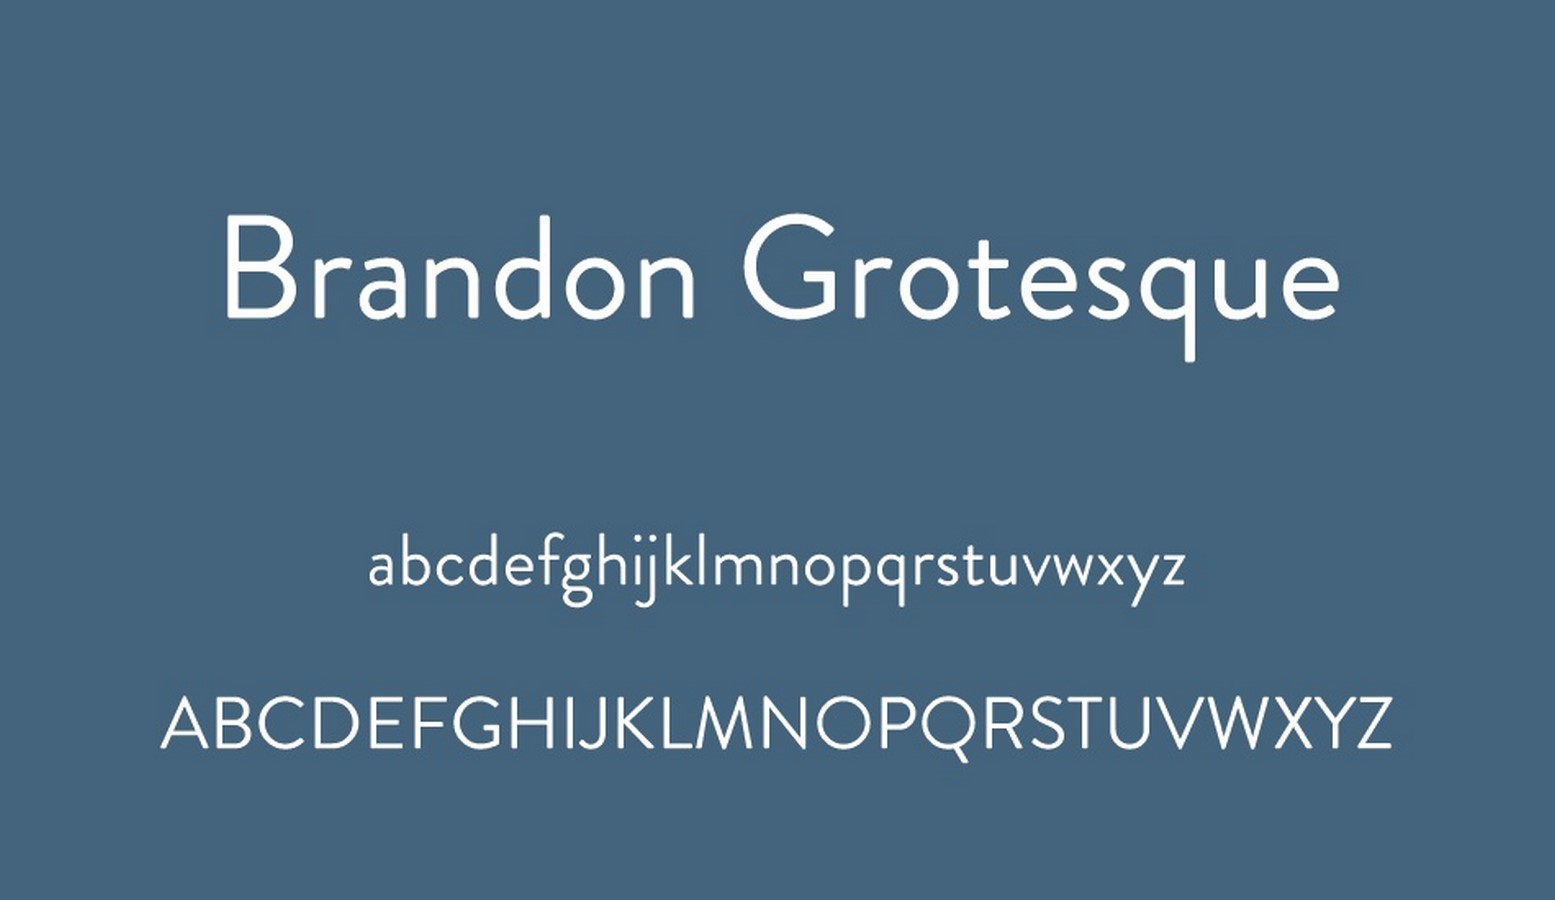 Brandon Grotesque - Sheet3